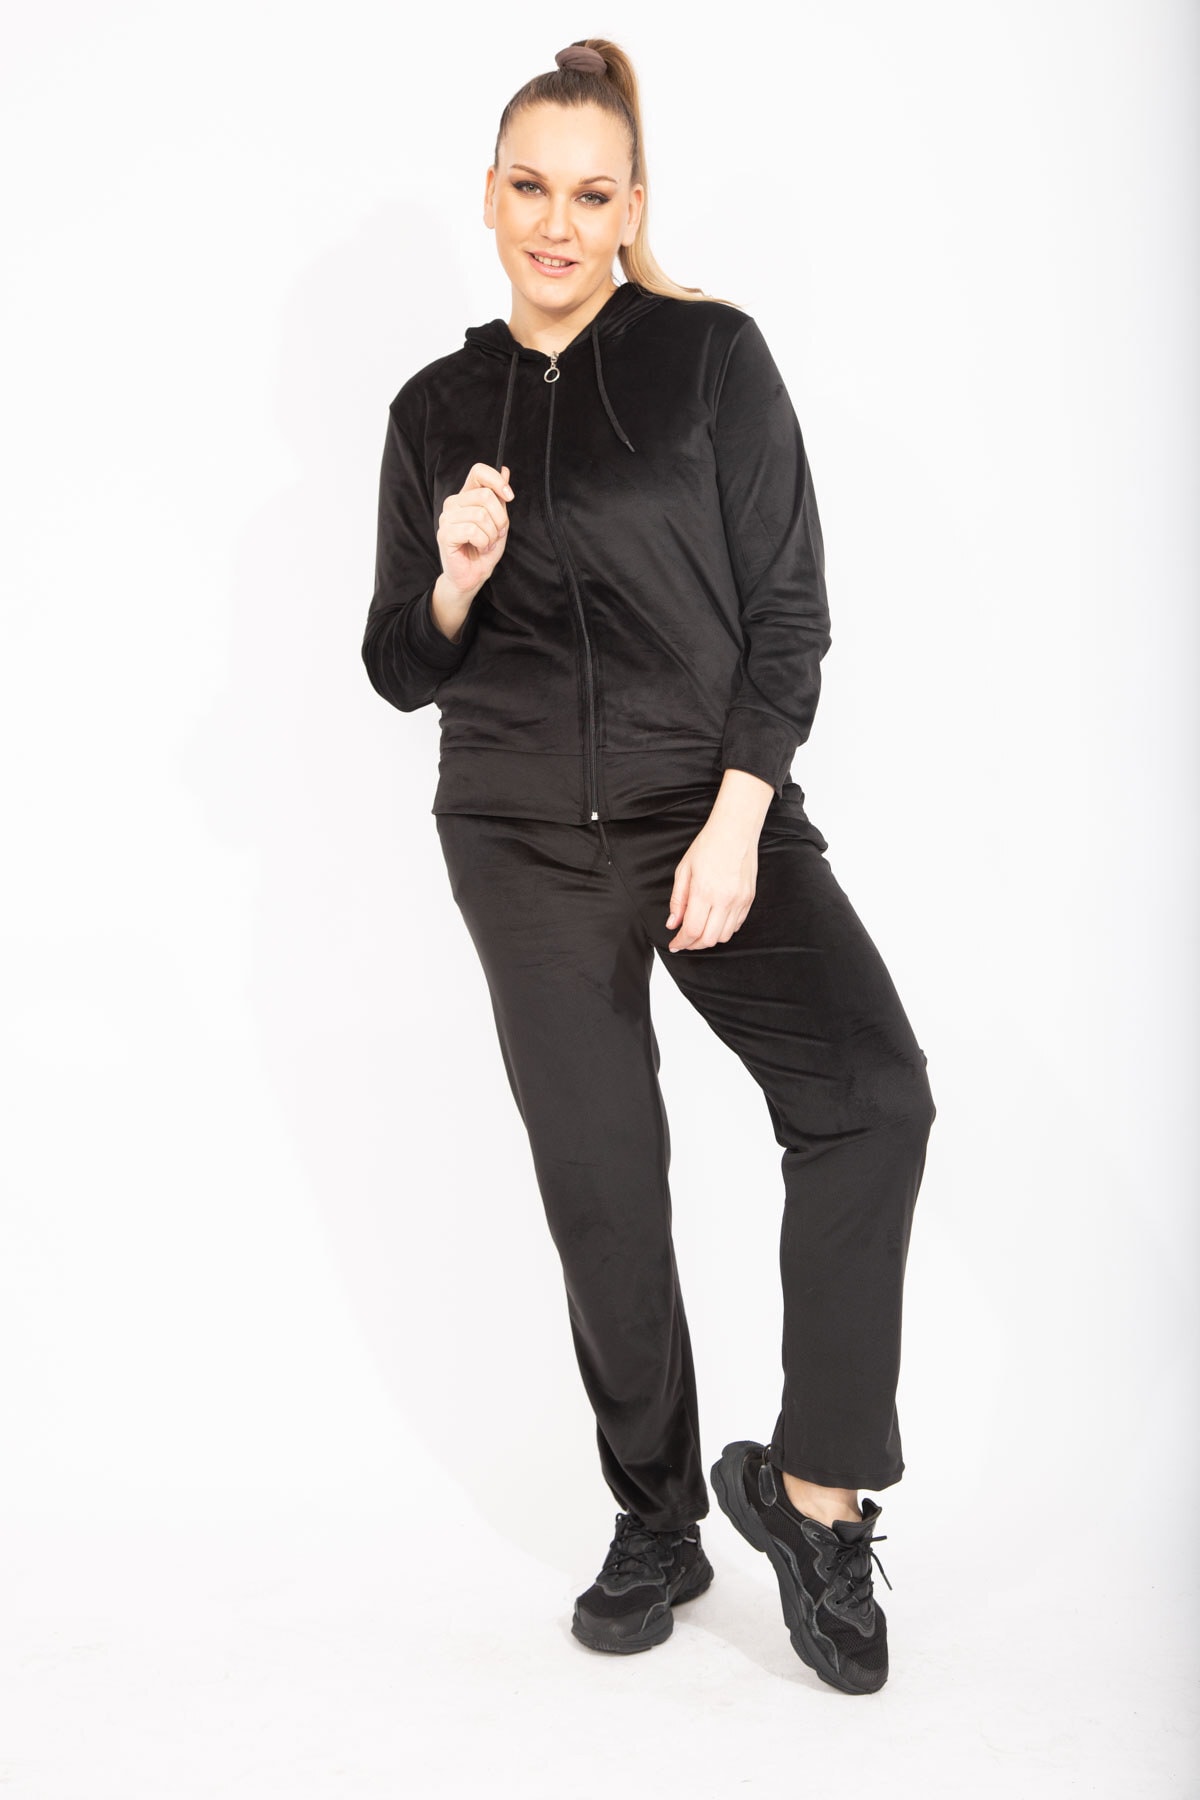 Şans Women's Plus Size Black Velvet Sweatshirt and Pants Double Suit